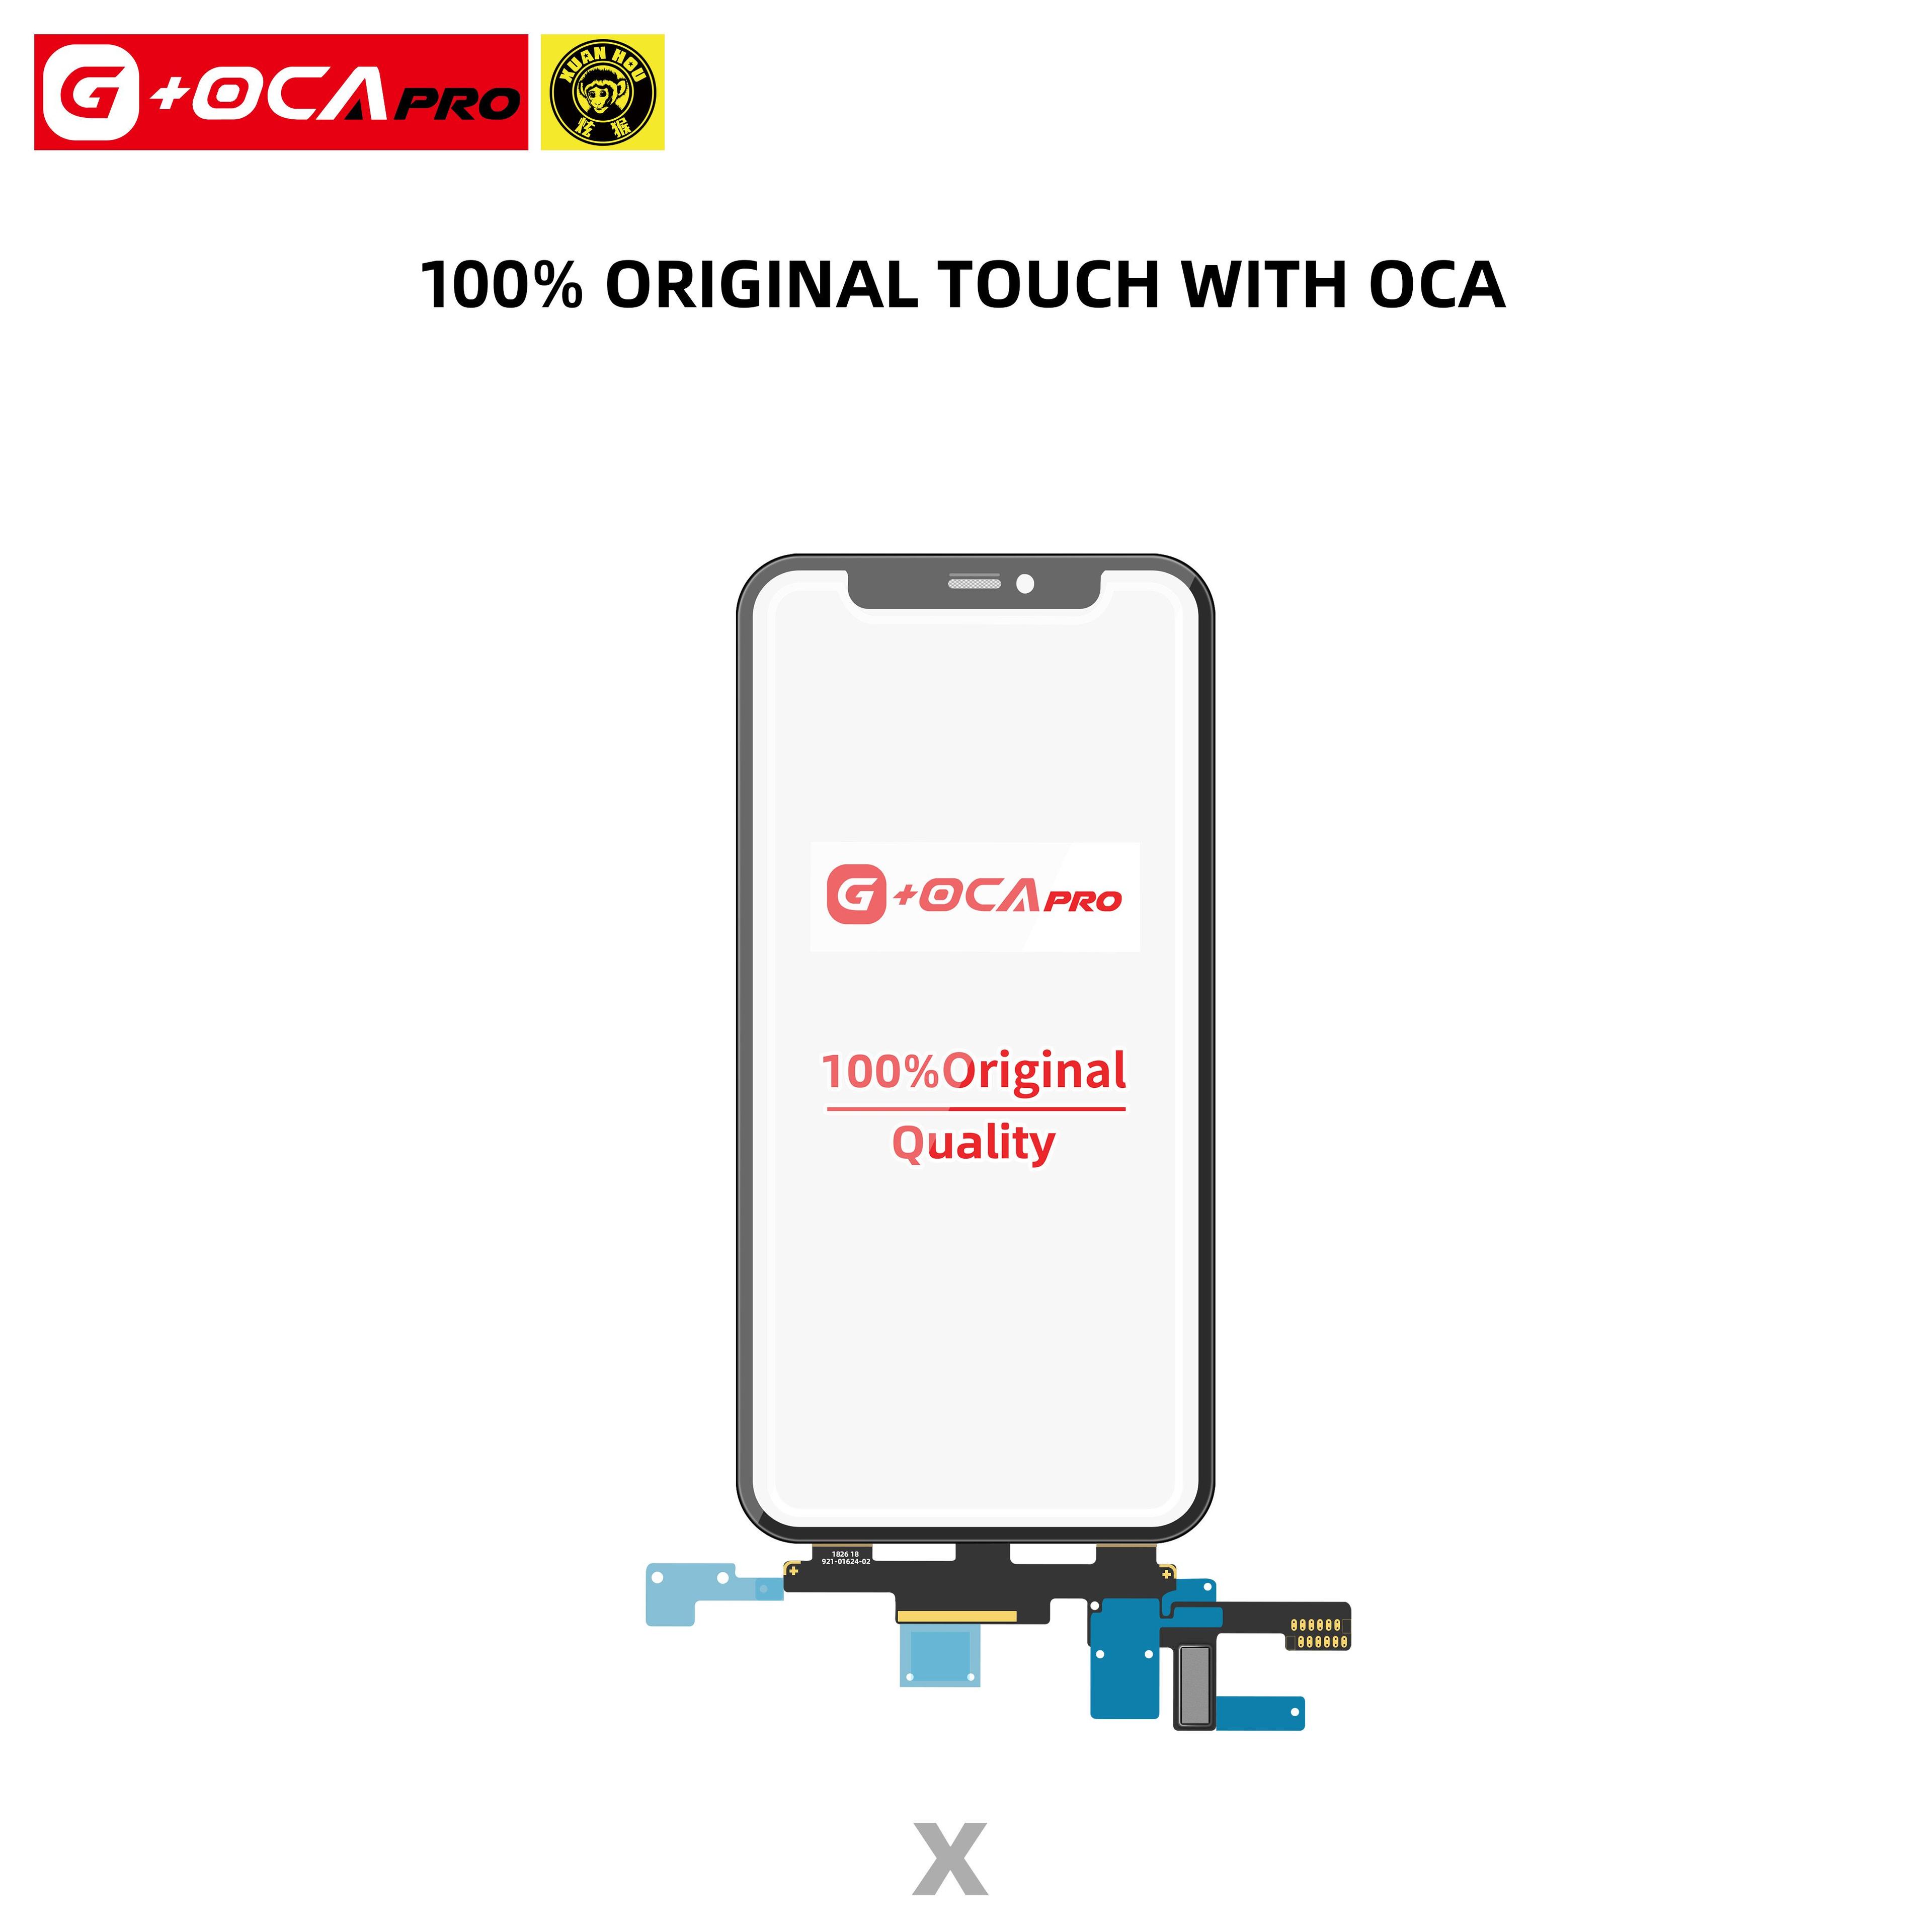 Ekran dotykowy G + OCA Pro z oryginalnym kontrolerem dotyku (z powłoką oleofobową) iPhone X